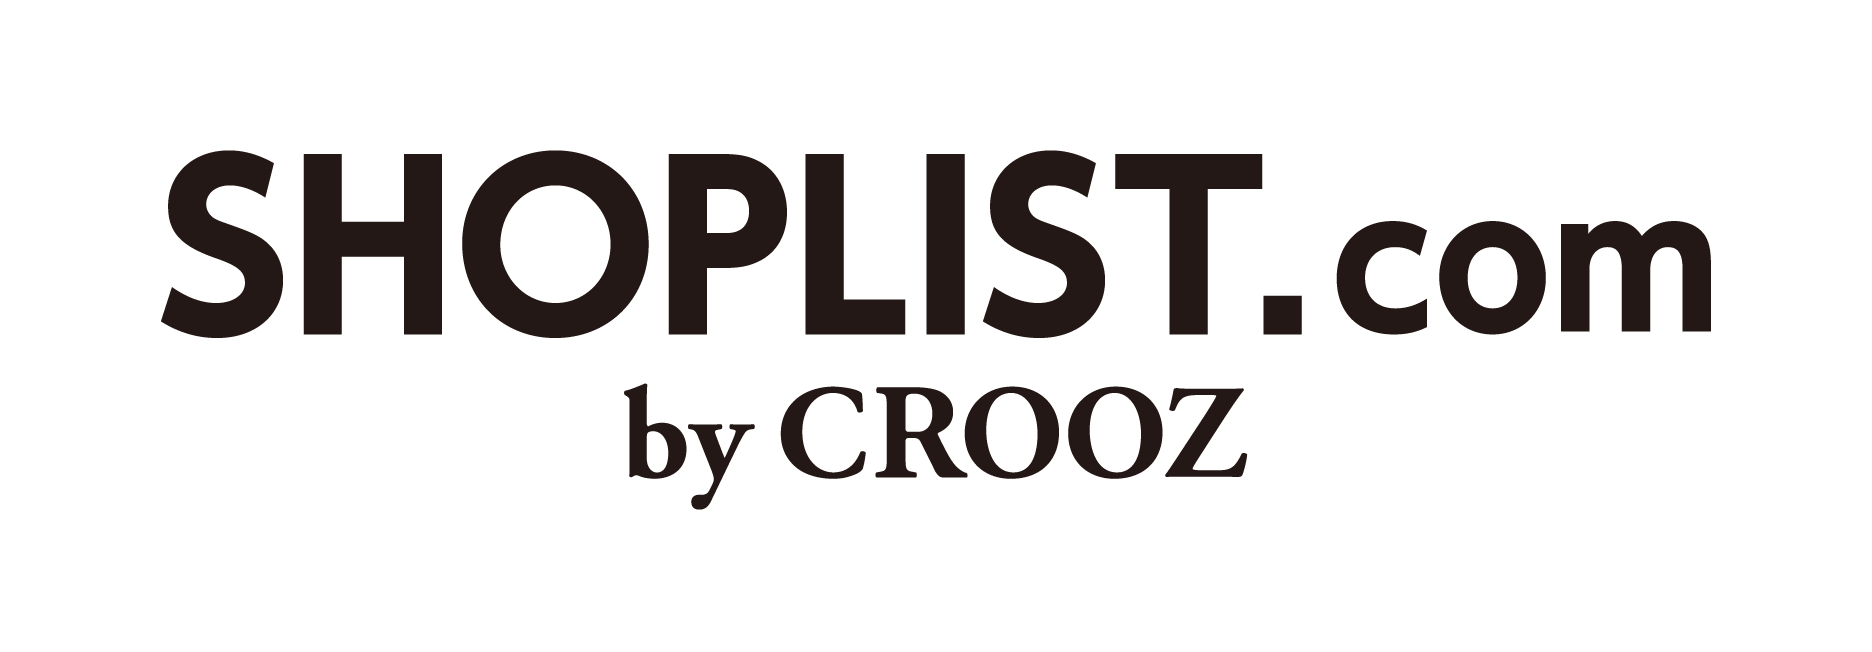 CROOZ SHOPLIST株式会社